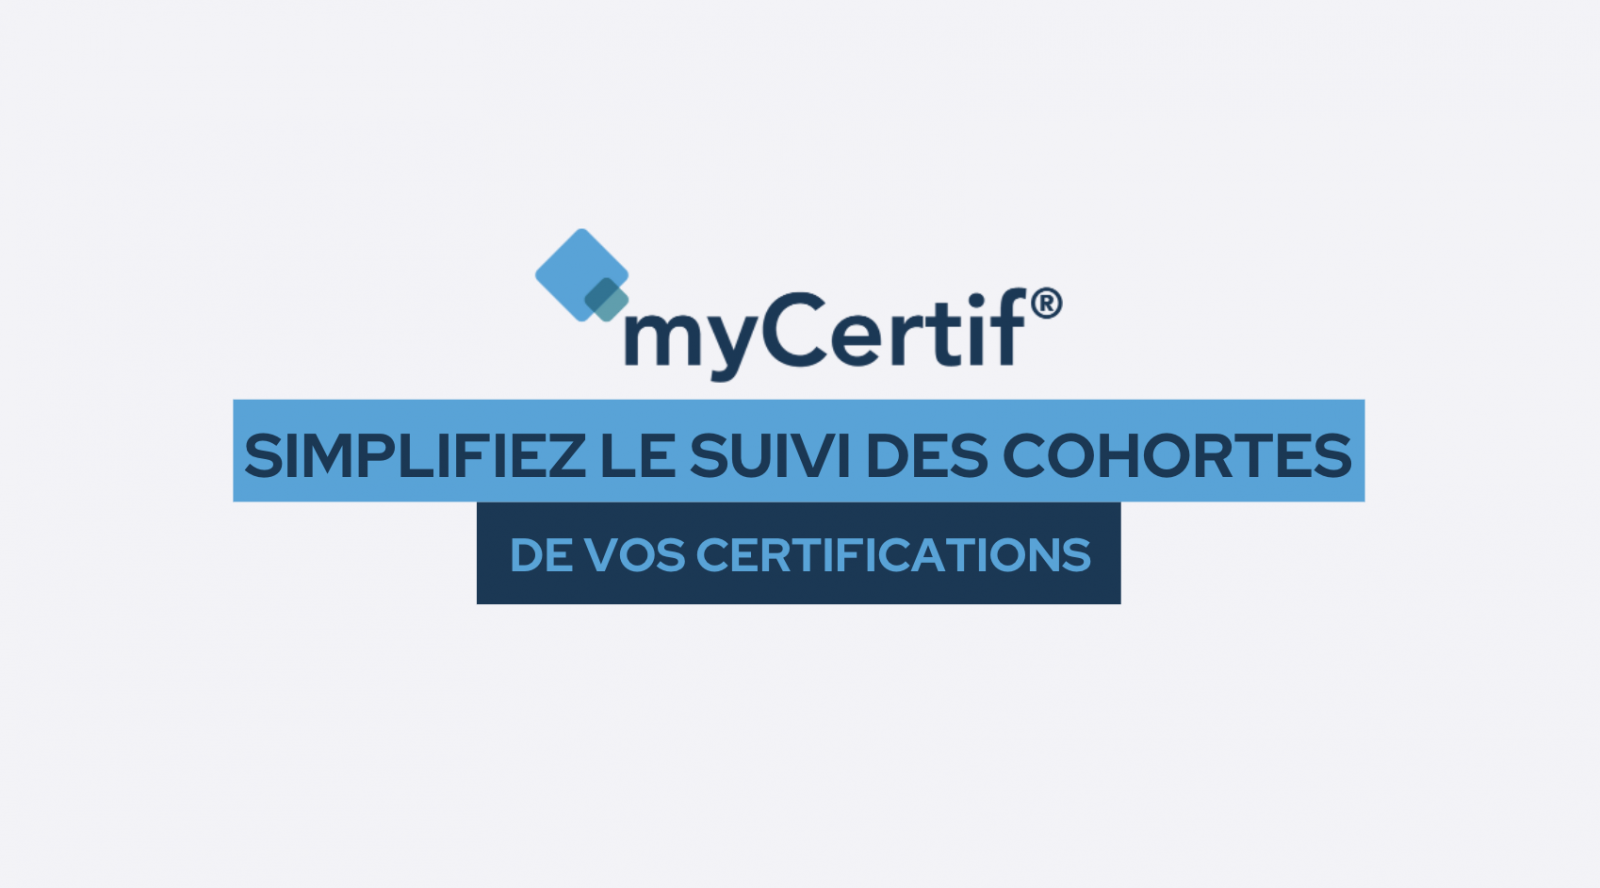 myCertif accompagne le suivi de l'insertion professionnelle de vos candidats (suivi des cohortes)